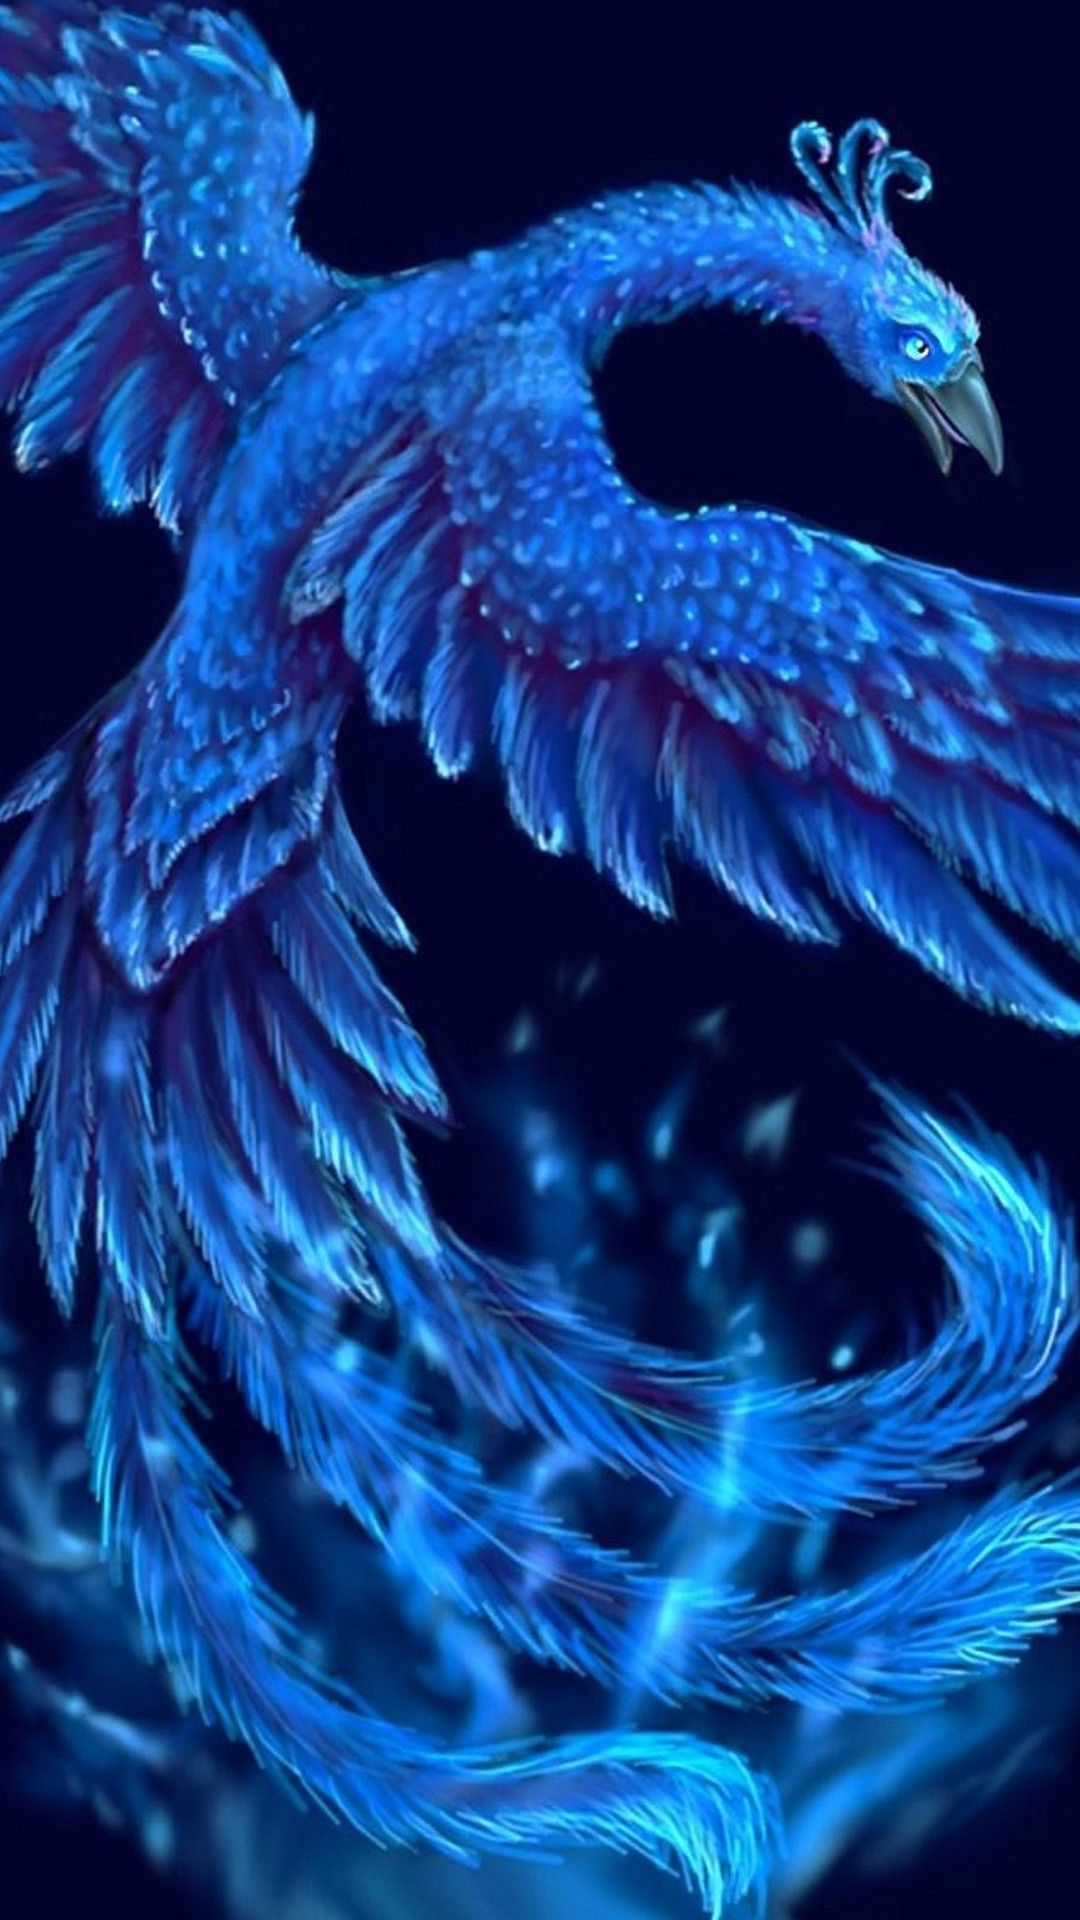 Ice Phoenix Wallpaper Free Ice Phoenix Background